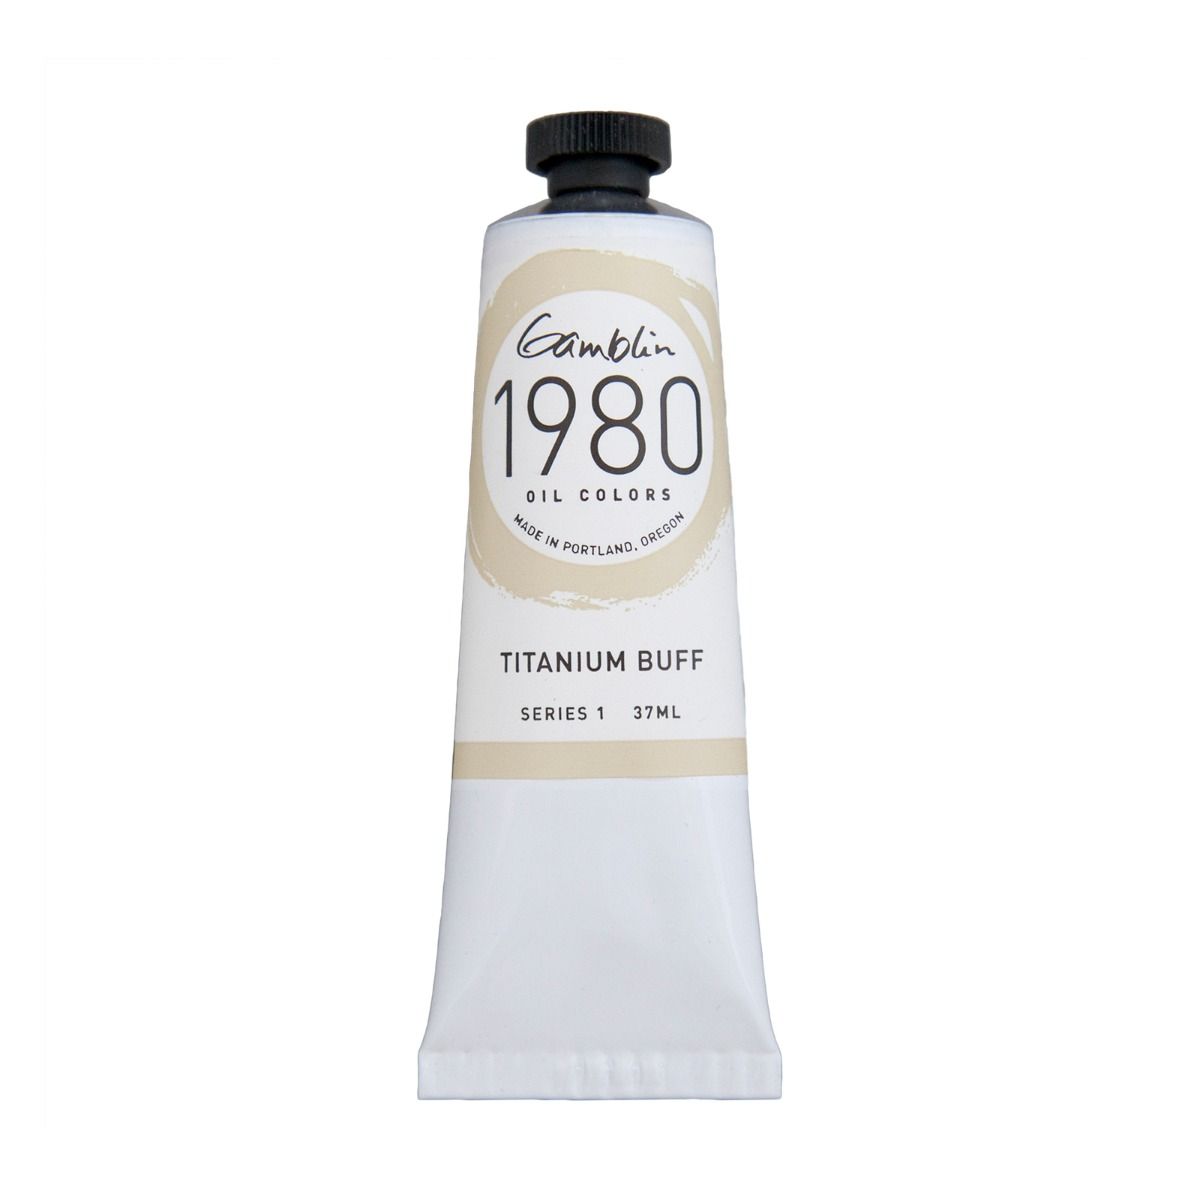 Gamblin 1980 Oils - Titanium Buff, 37 ml (1.25oz)